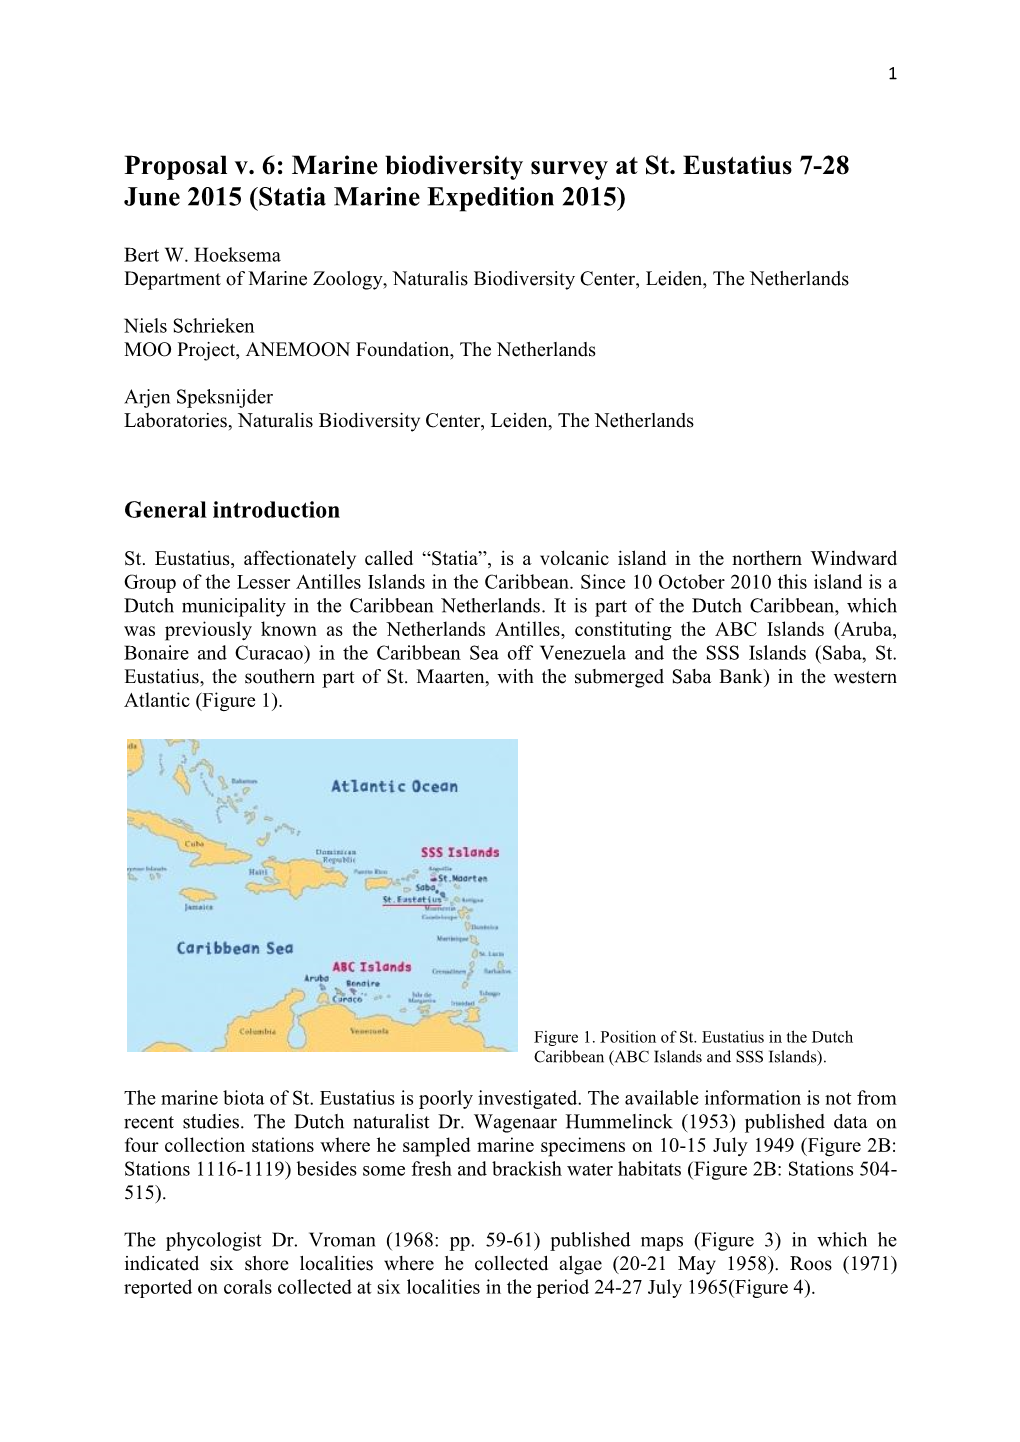 Proposal V. 6: Marine Biodiversity Survey at St. Eustatius 7-28 June 2015 (Statia Marine Expedition 2015)